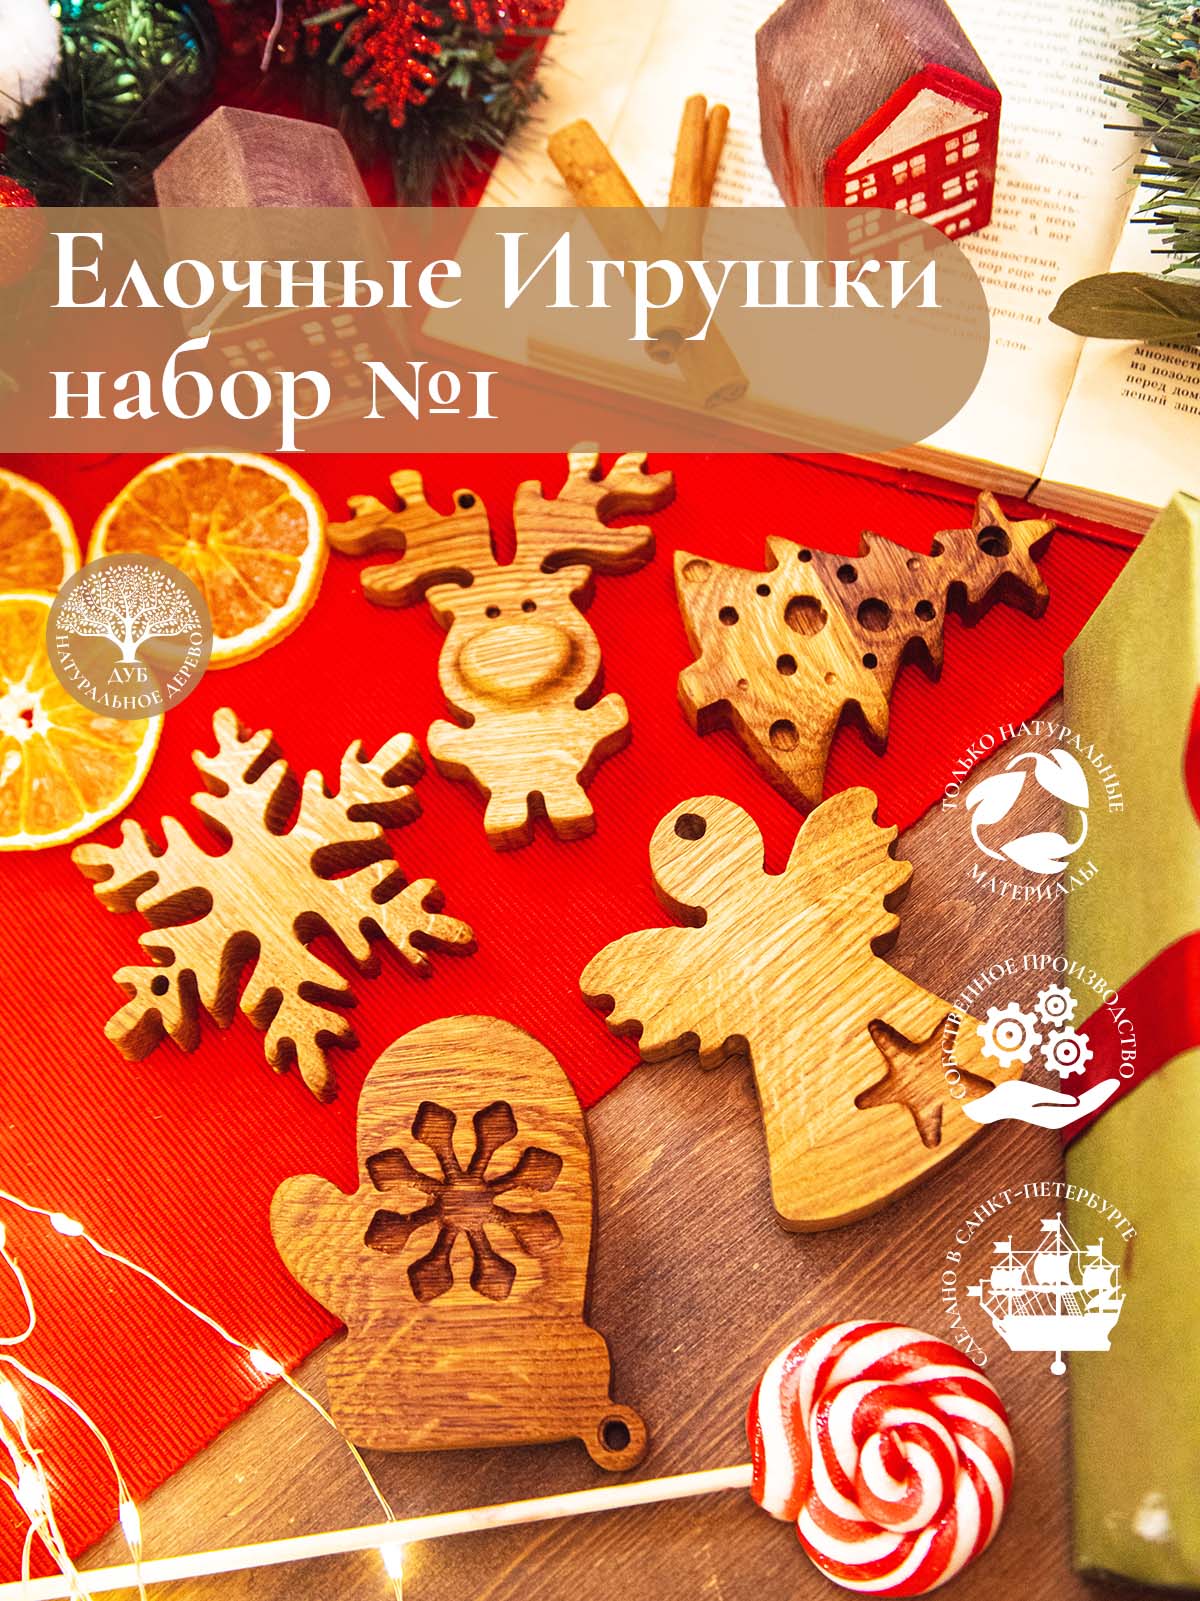 Новогодние снежинки на елку - купить в интернет-магазине баштрен.рф - Страница 1